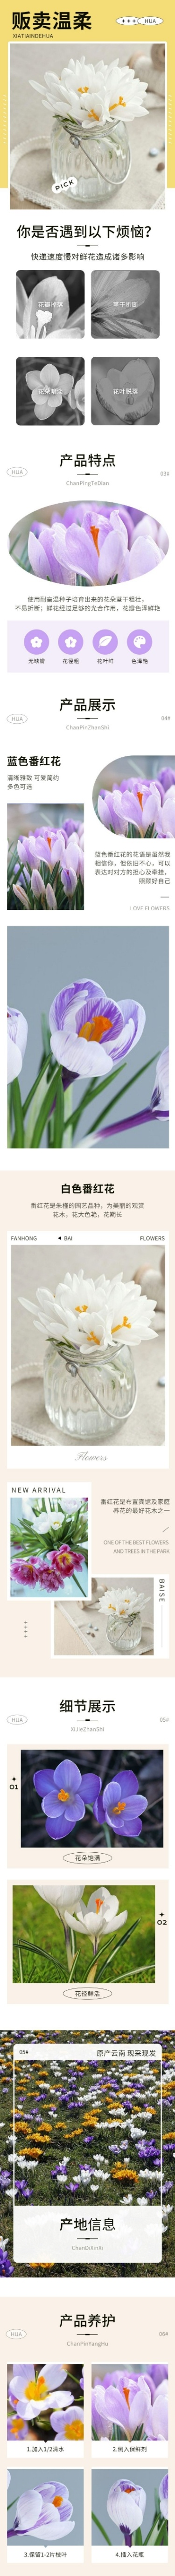 电商鲜花植物产品展示详情页